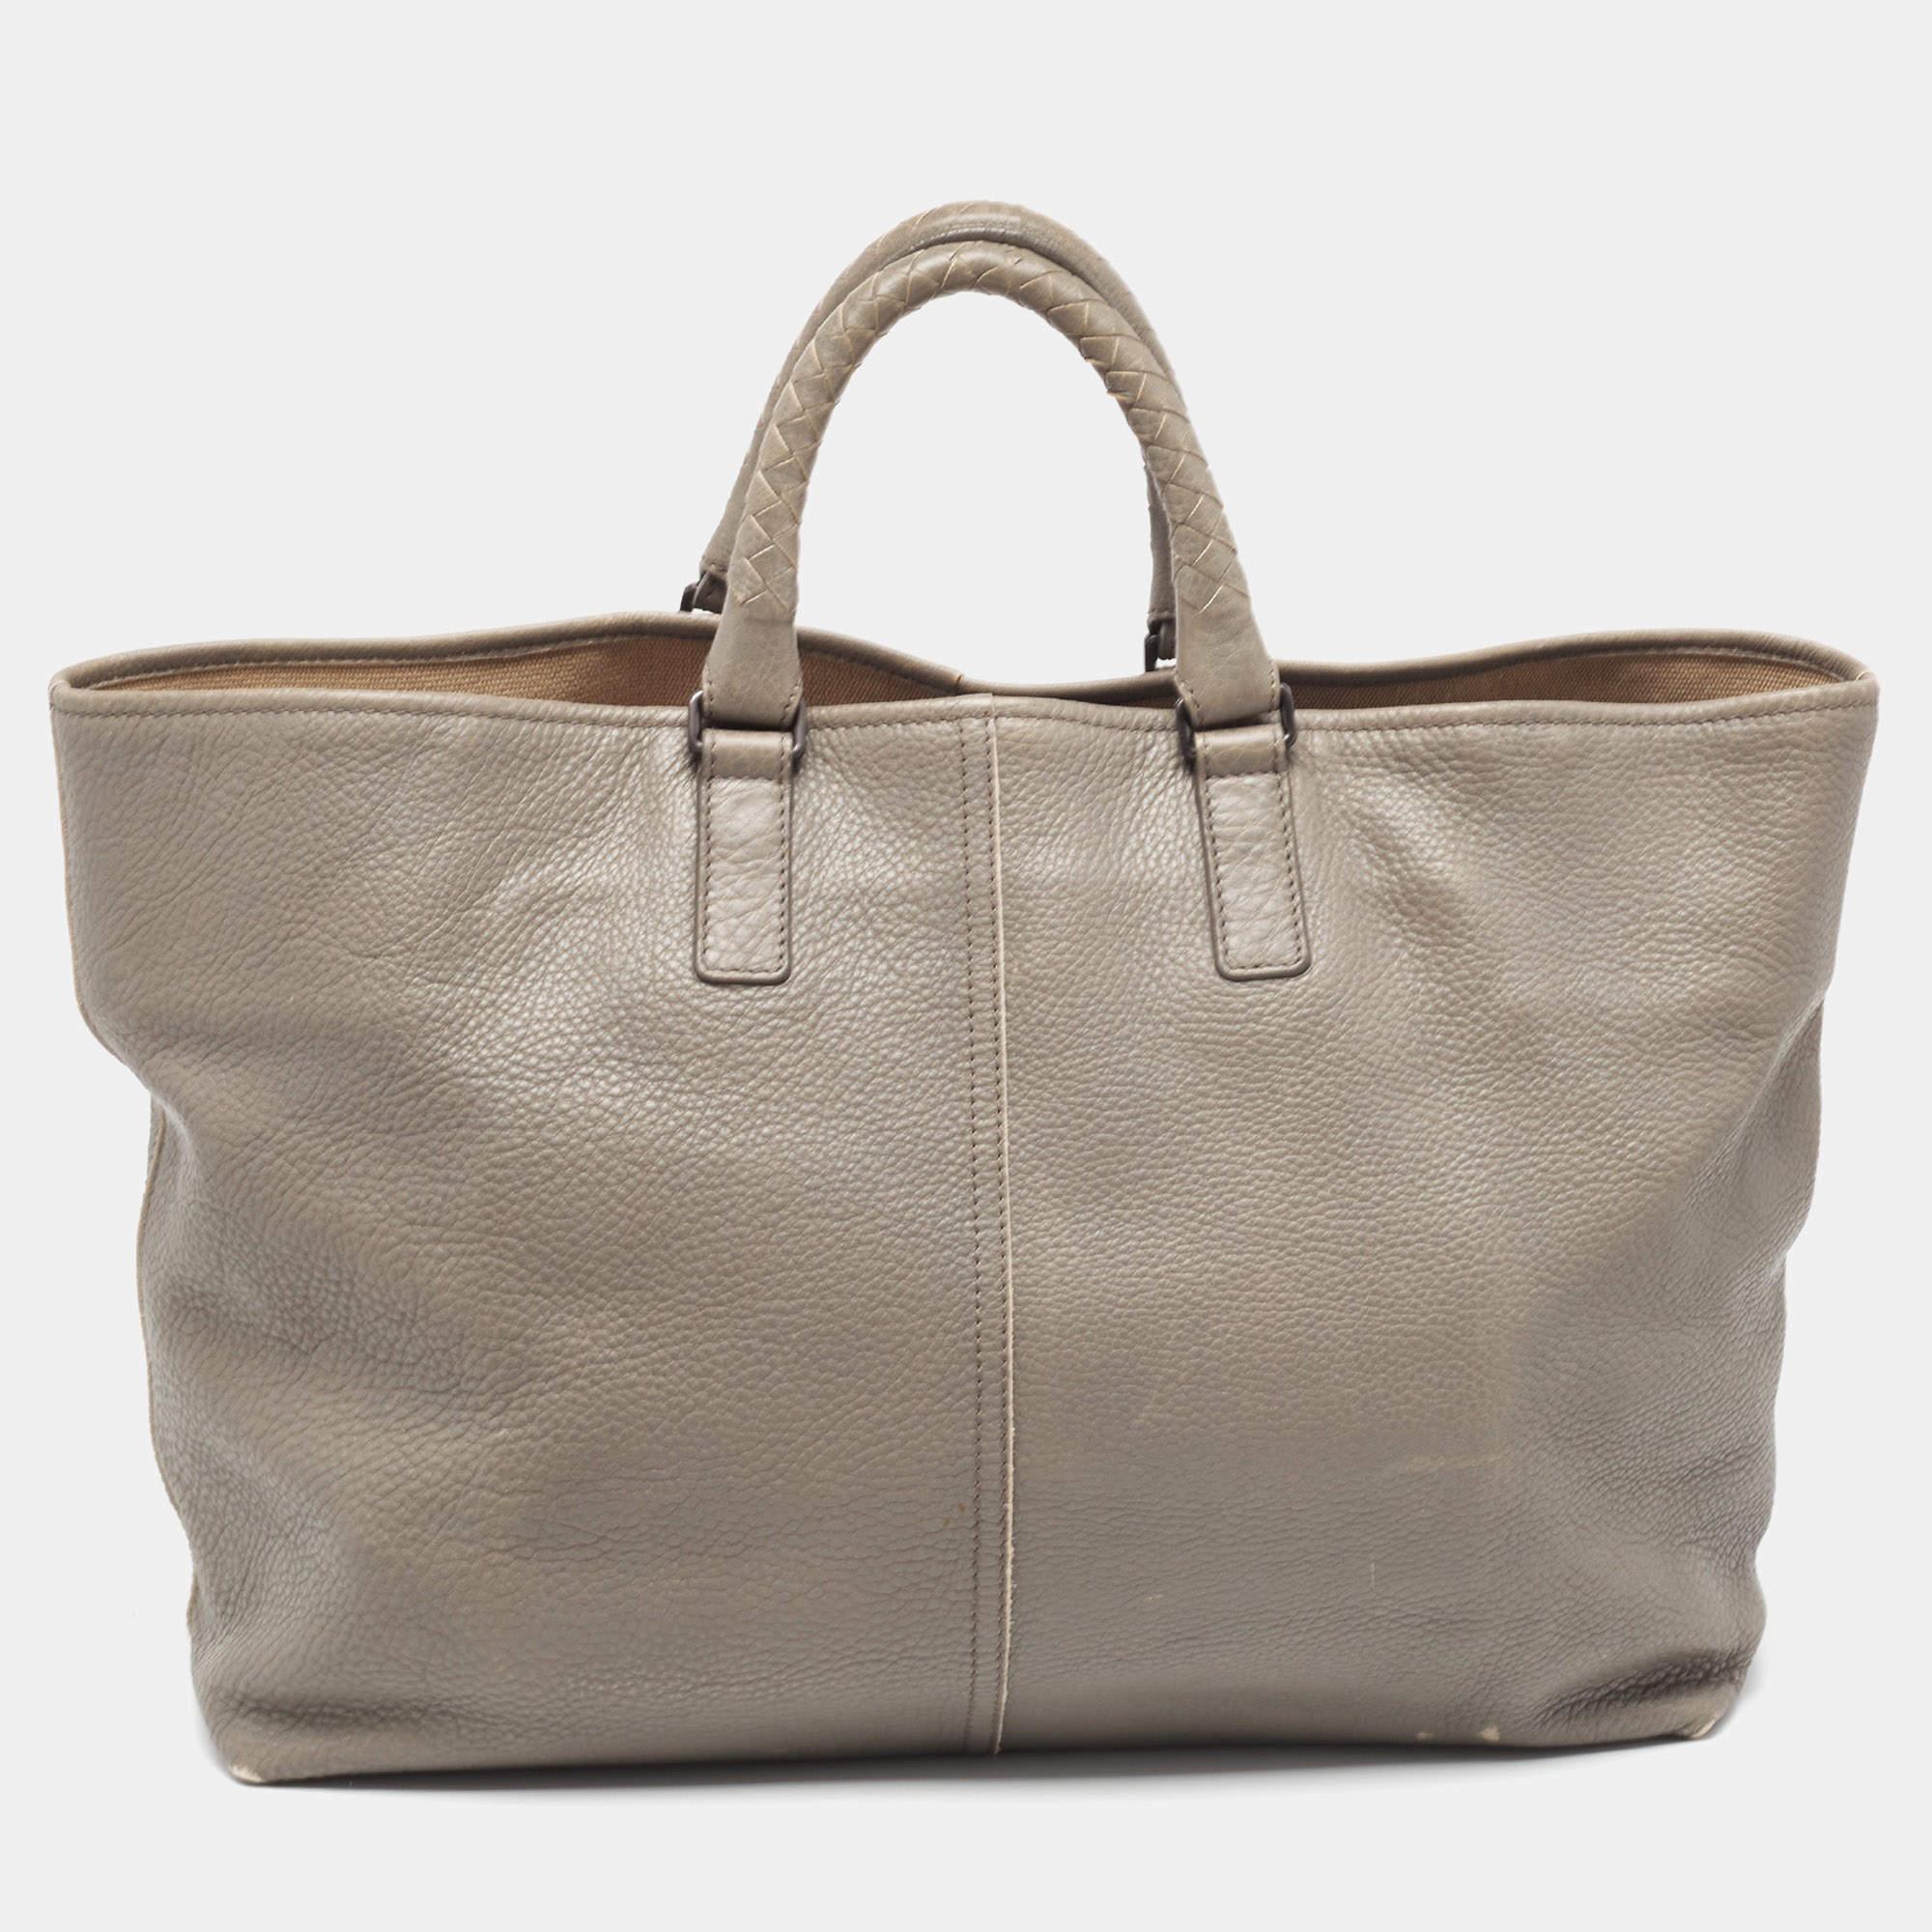 Ce sac Intrecciato de Bottega Veneta pour femme se caractérise par des détails bien pensés, une qualité supérieure et une commodité au quotidien. Le sac est cousu avec talent pour offrir un look raffiné et une finition impeccable.

